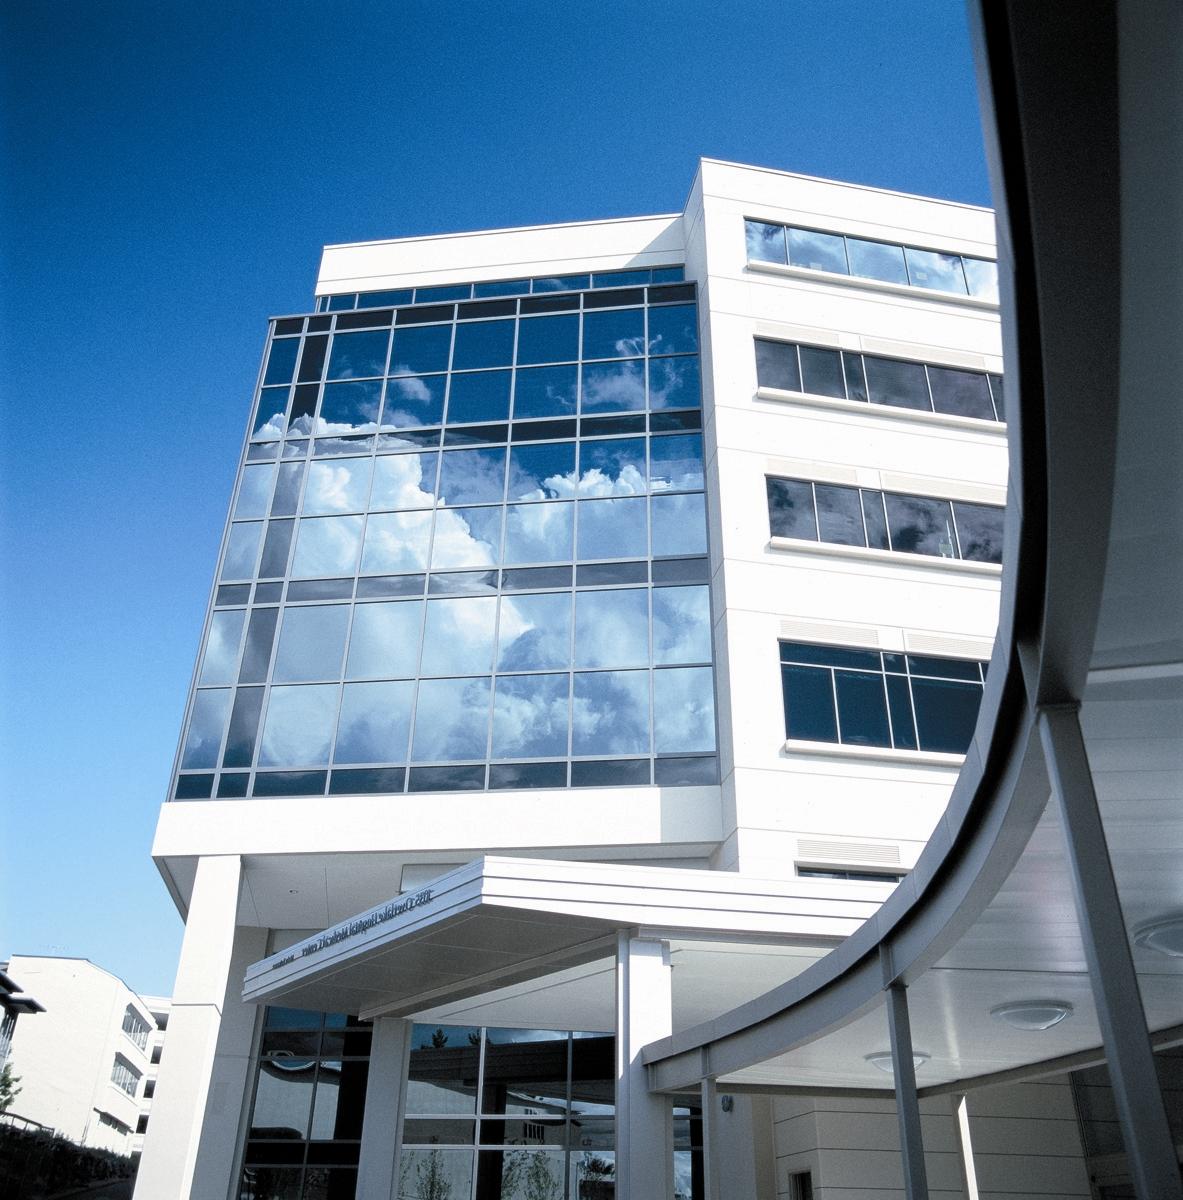 Overlake Hospital Medical Center is a 349-bed, nonprofit regional medical center in Bellevue, Washington.